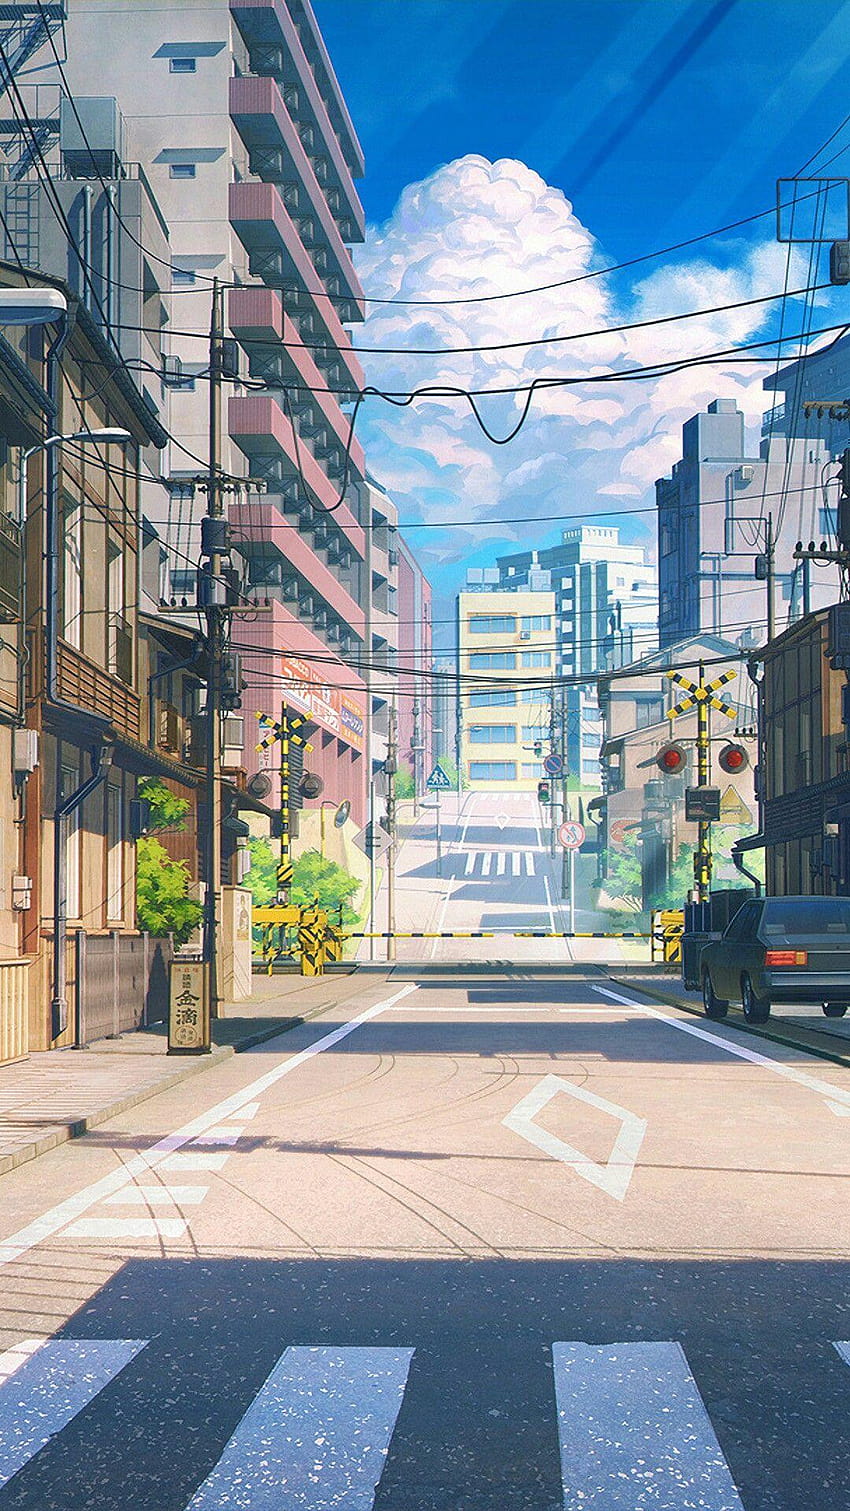 Aesthetic anime street wallpaper for phone. - Anime city